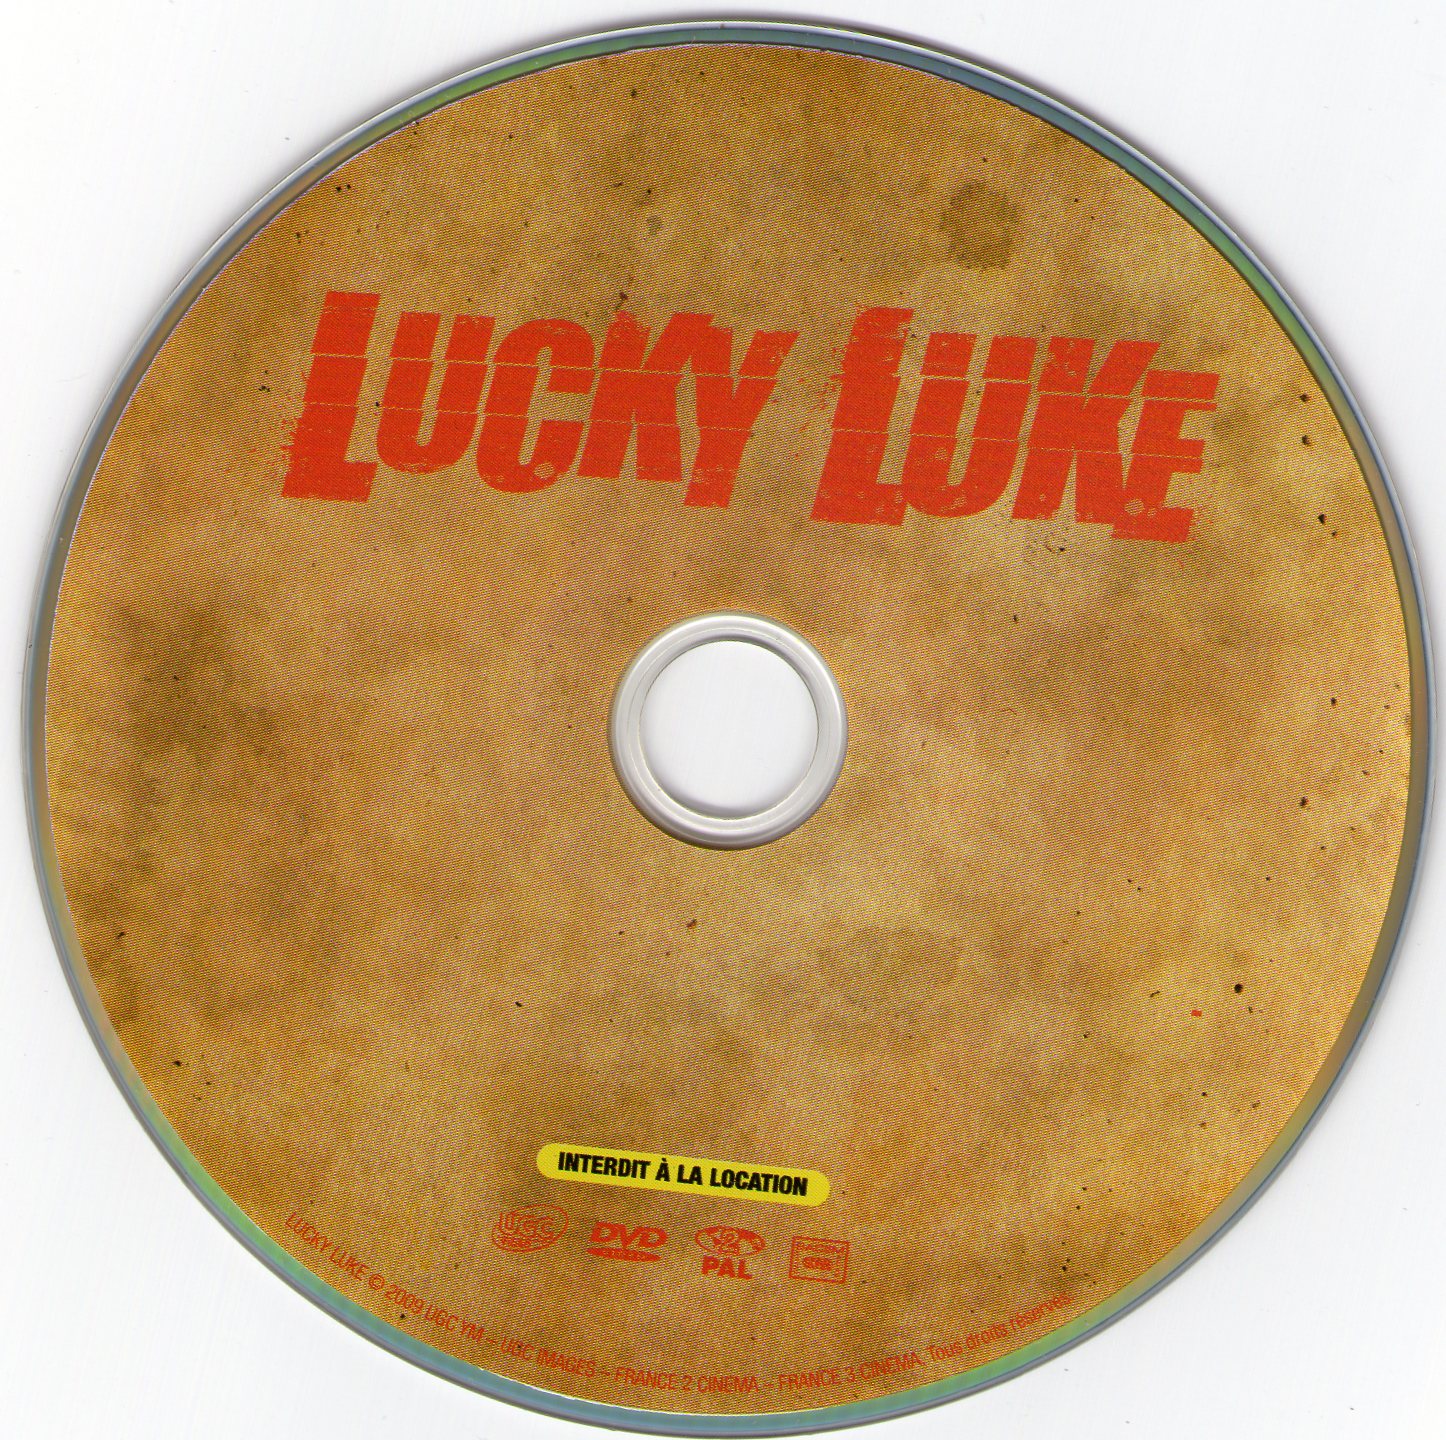 Lucky luke (2009)